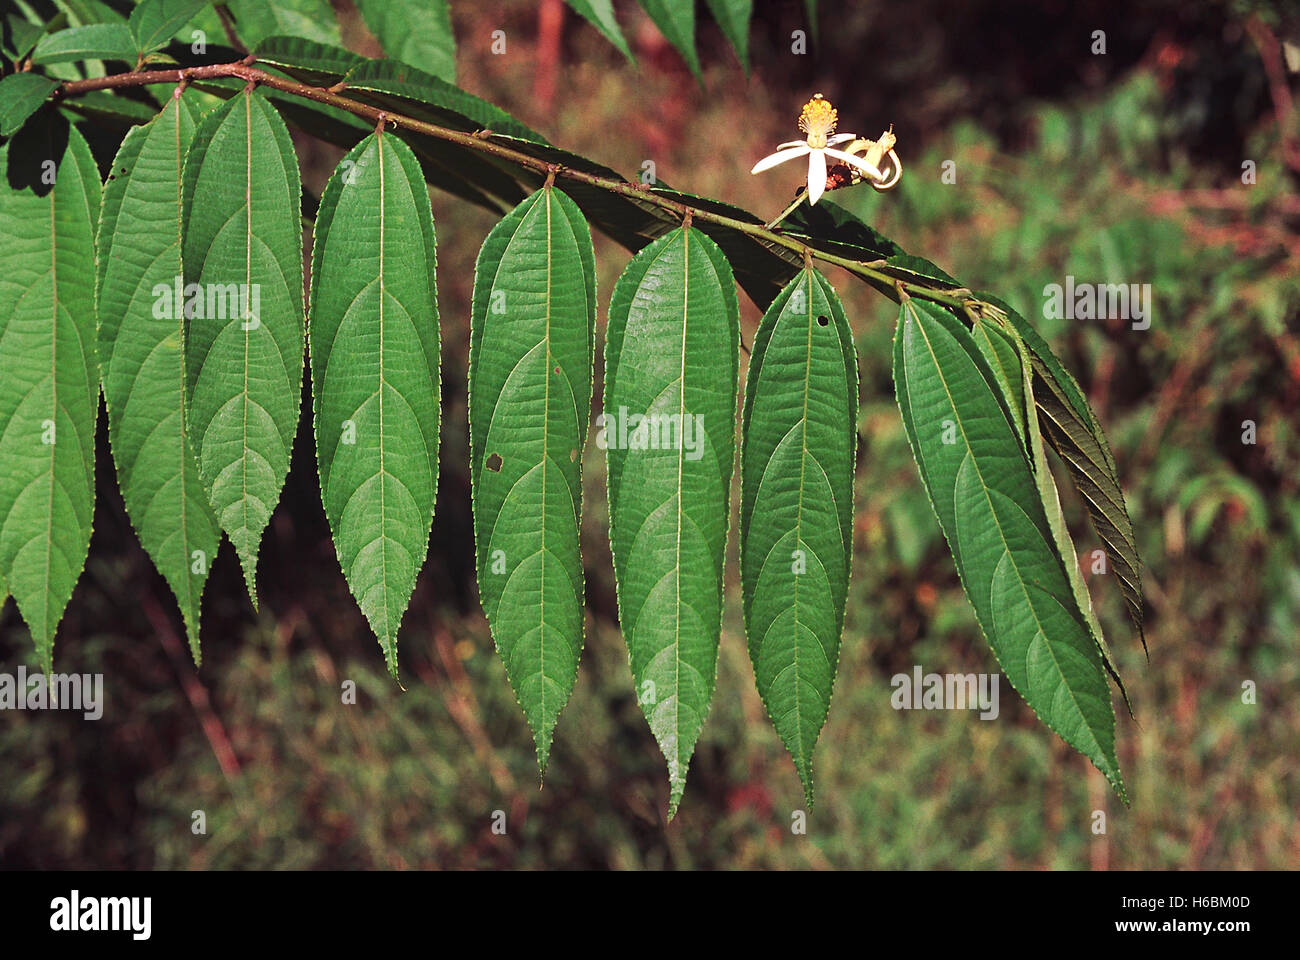 Fleurs. grewia sp. famille : tiliaceae. un petit arbre à feuilles caduques dans les forêts de feuillus humides des Ghâts occidentaux (Inde). Banque D'Images